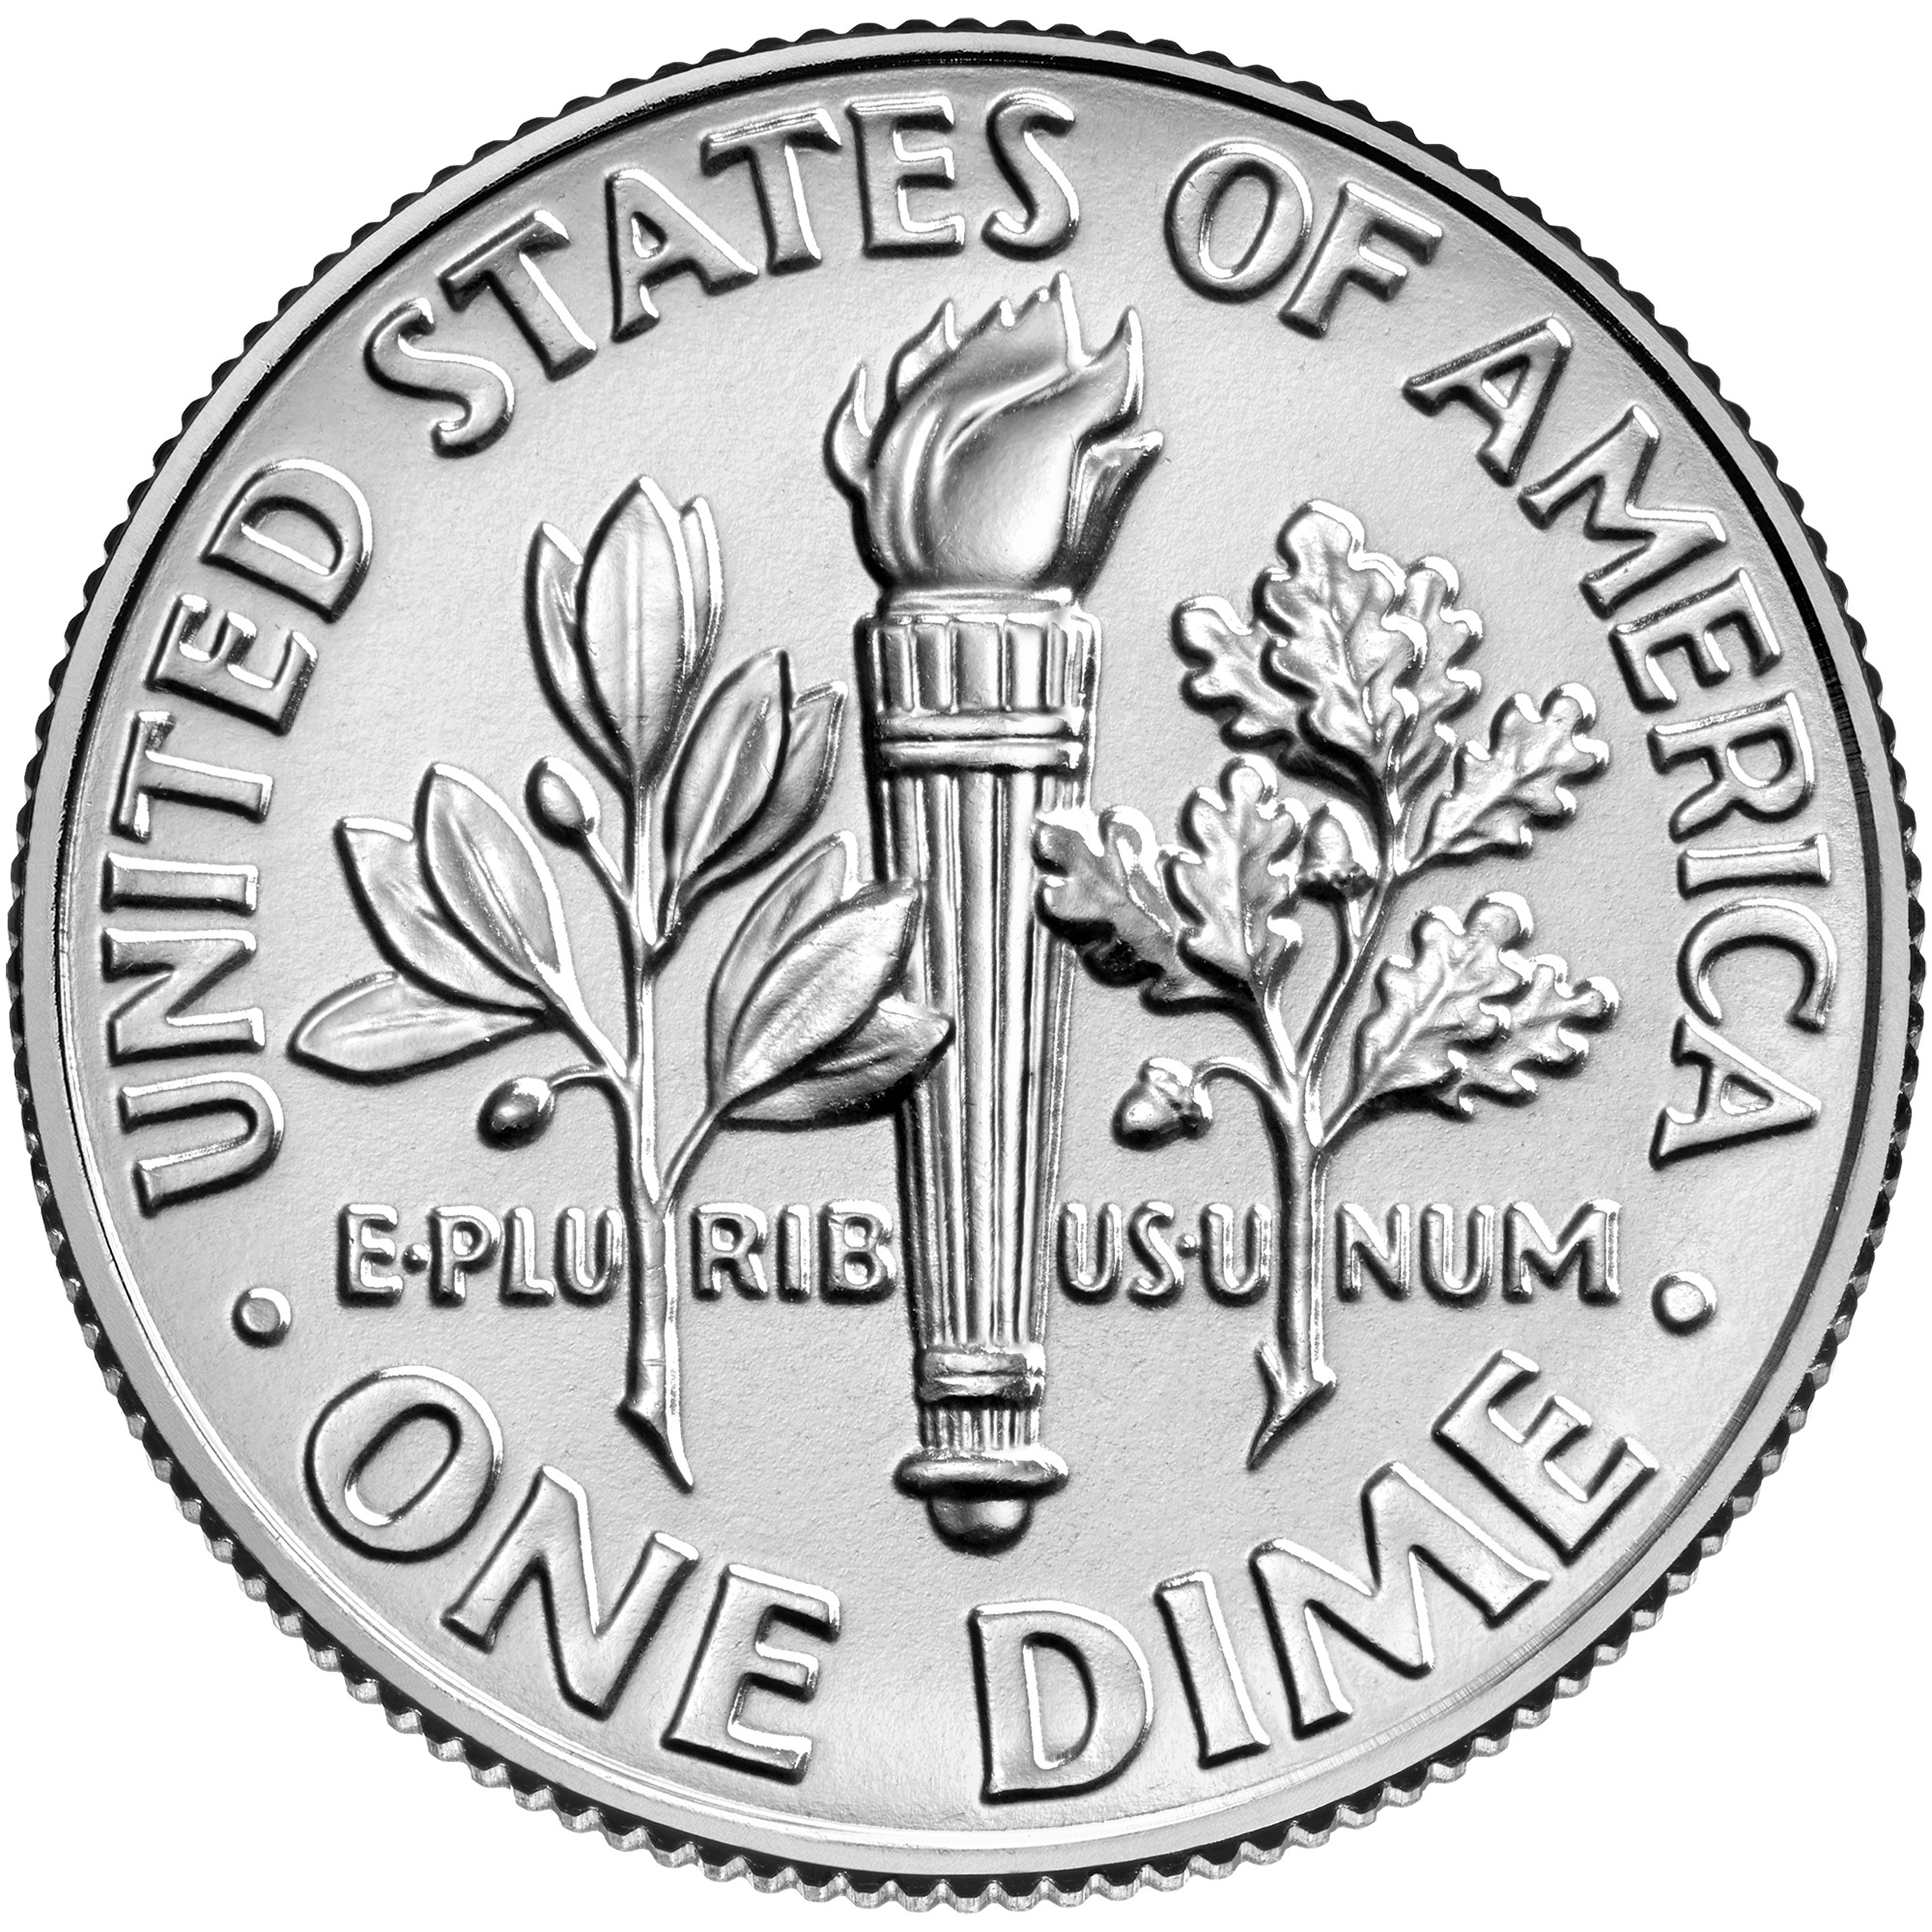 US 10 Cent - Dime 2005 S